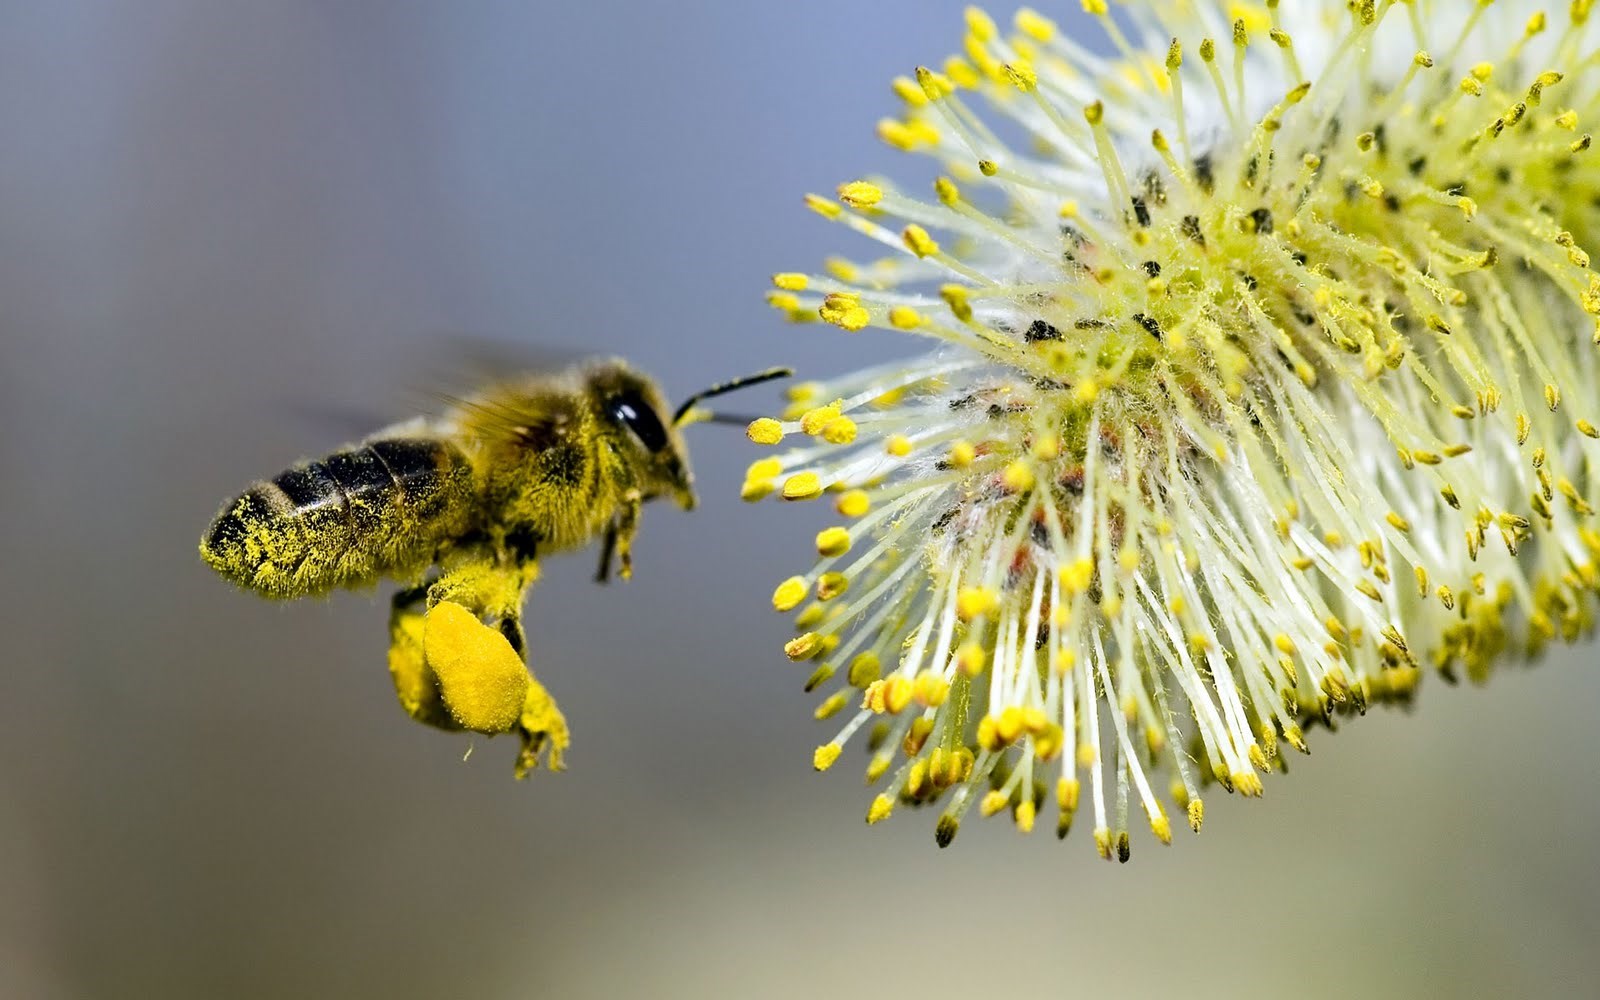 Tarım, tahmin ettiğimizden çok daha fazla arı öldürüyor